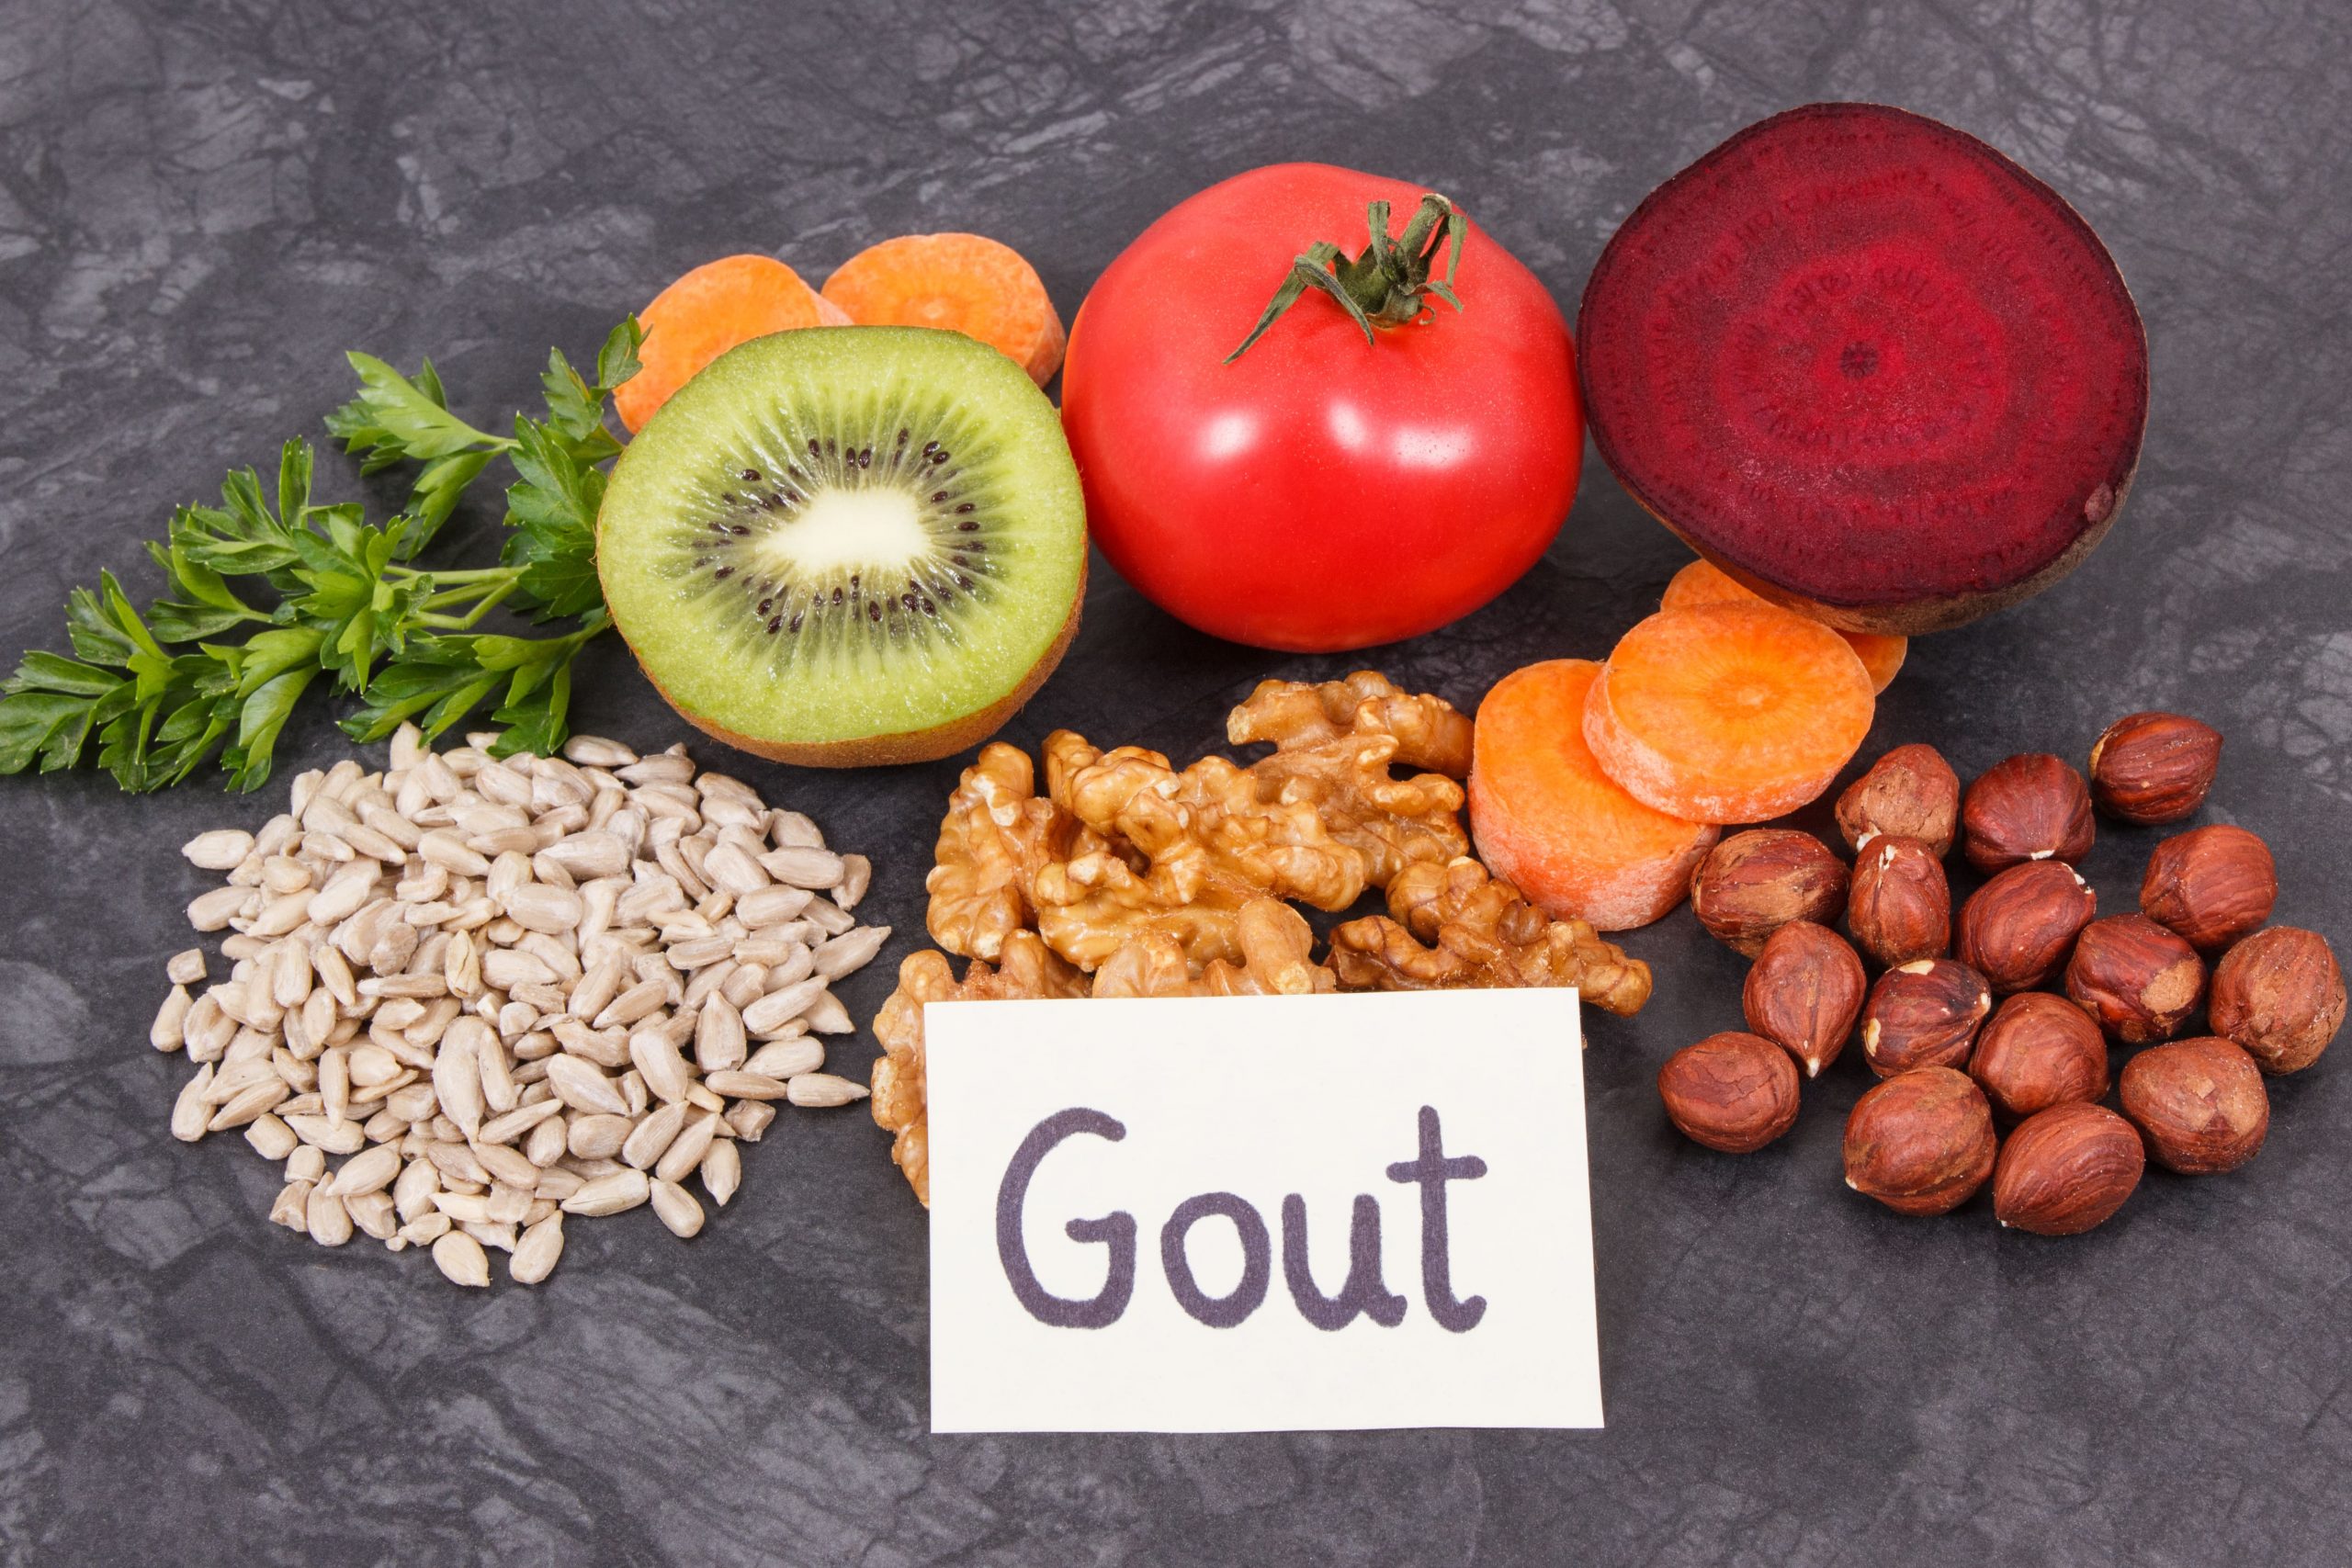 How to Avoid Gouty Arthritis?